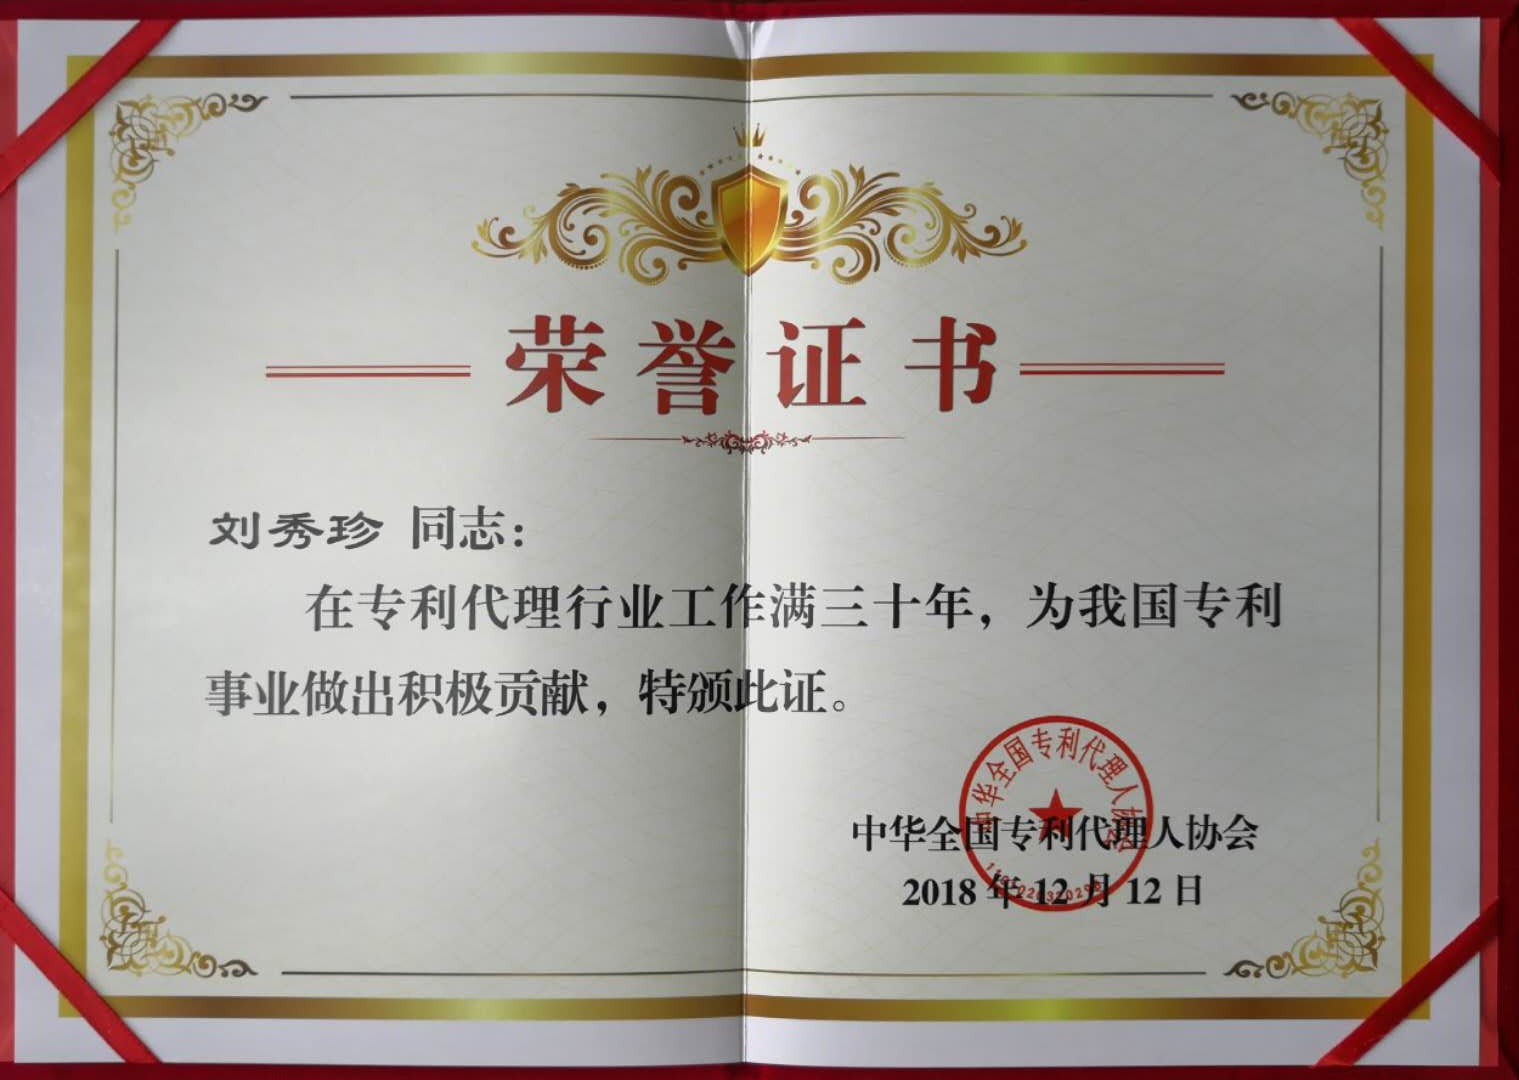 世譽鑫誠合伙人喜獲“在專利代理行業工作滿三十年”證書